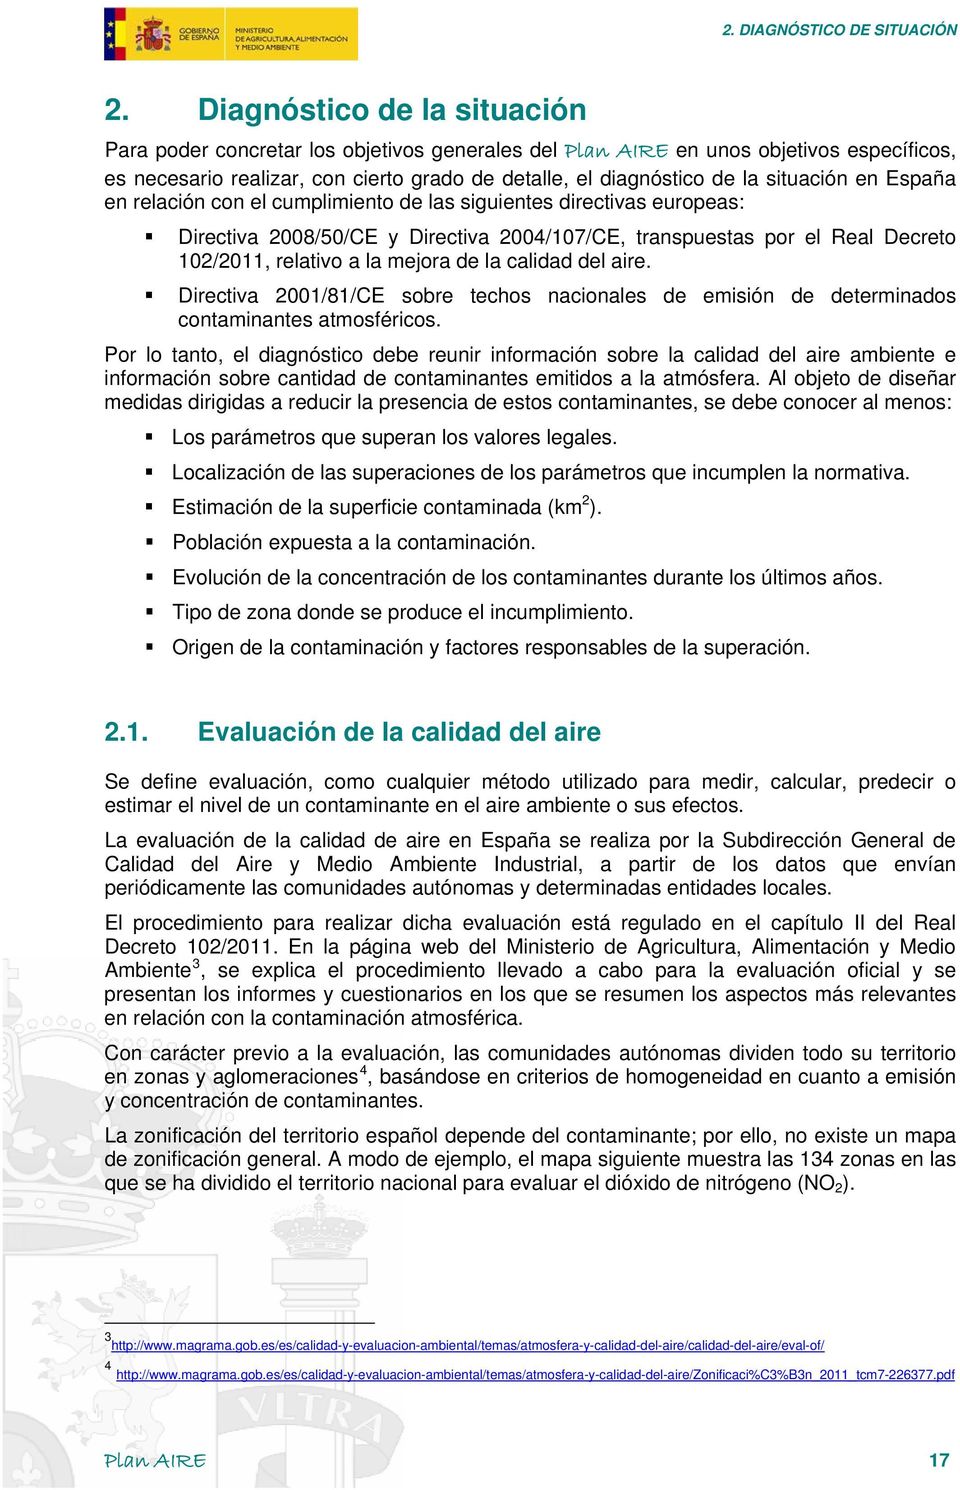 situación en España en relación con el cumplimiento de las siguientes directivas europeas: Directiva 2008/50/CE y Directiva 2004/107/CE, transpuestas por el Real Decreto 102/2011, relativo a la